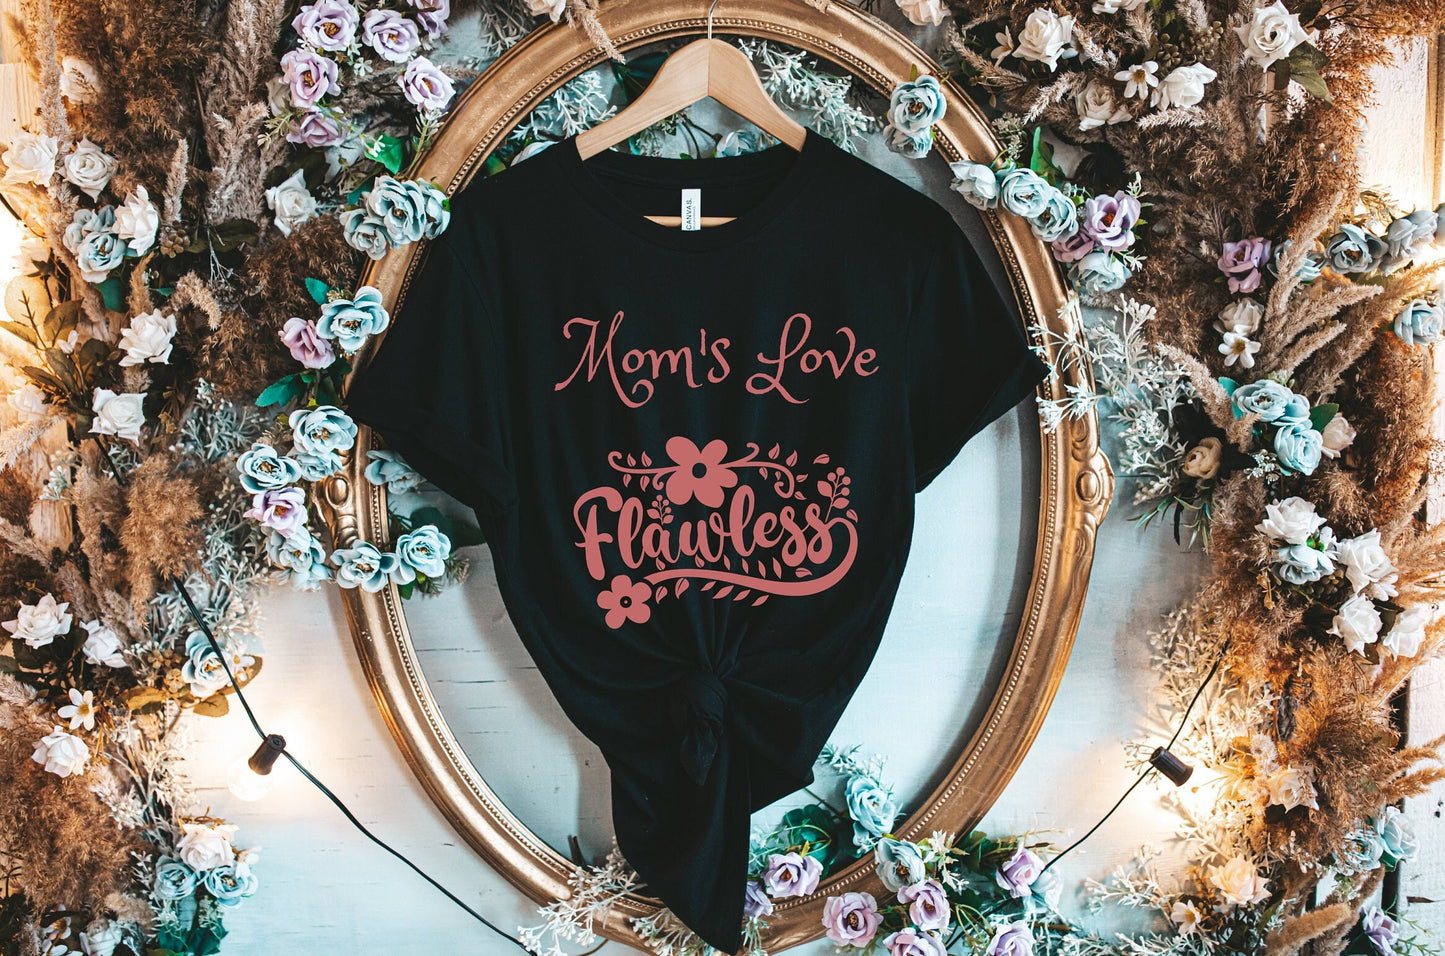 Moms love Shirt, Flawless mom shirt, Mom Gift shirt, Mom shirt, Mommy shirt, a Mothers love is flawless shirt, mom Tee shirt, grandma shirt